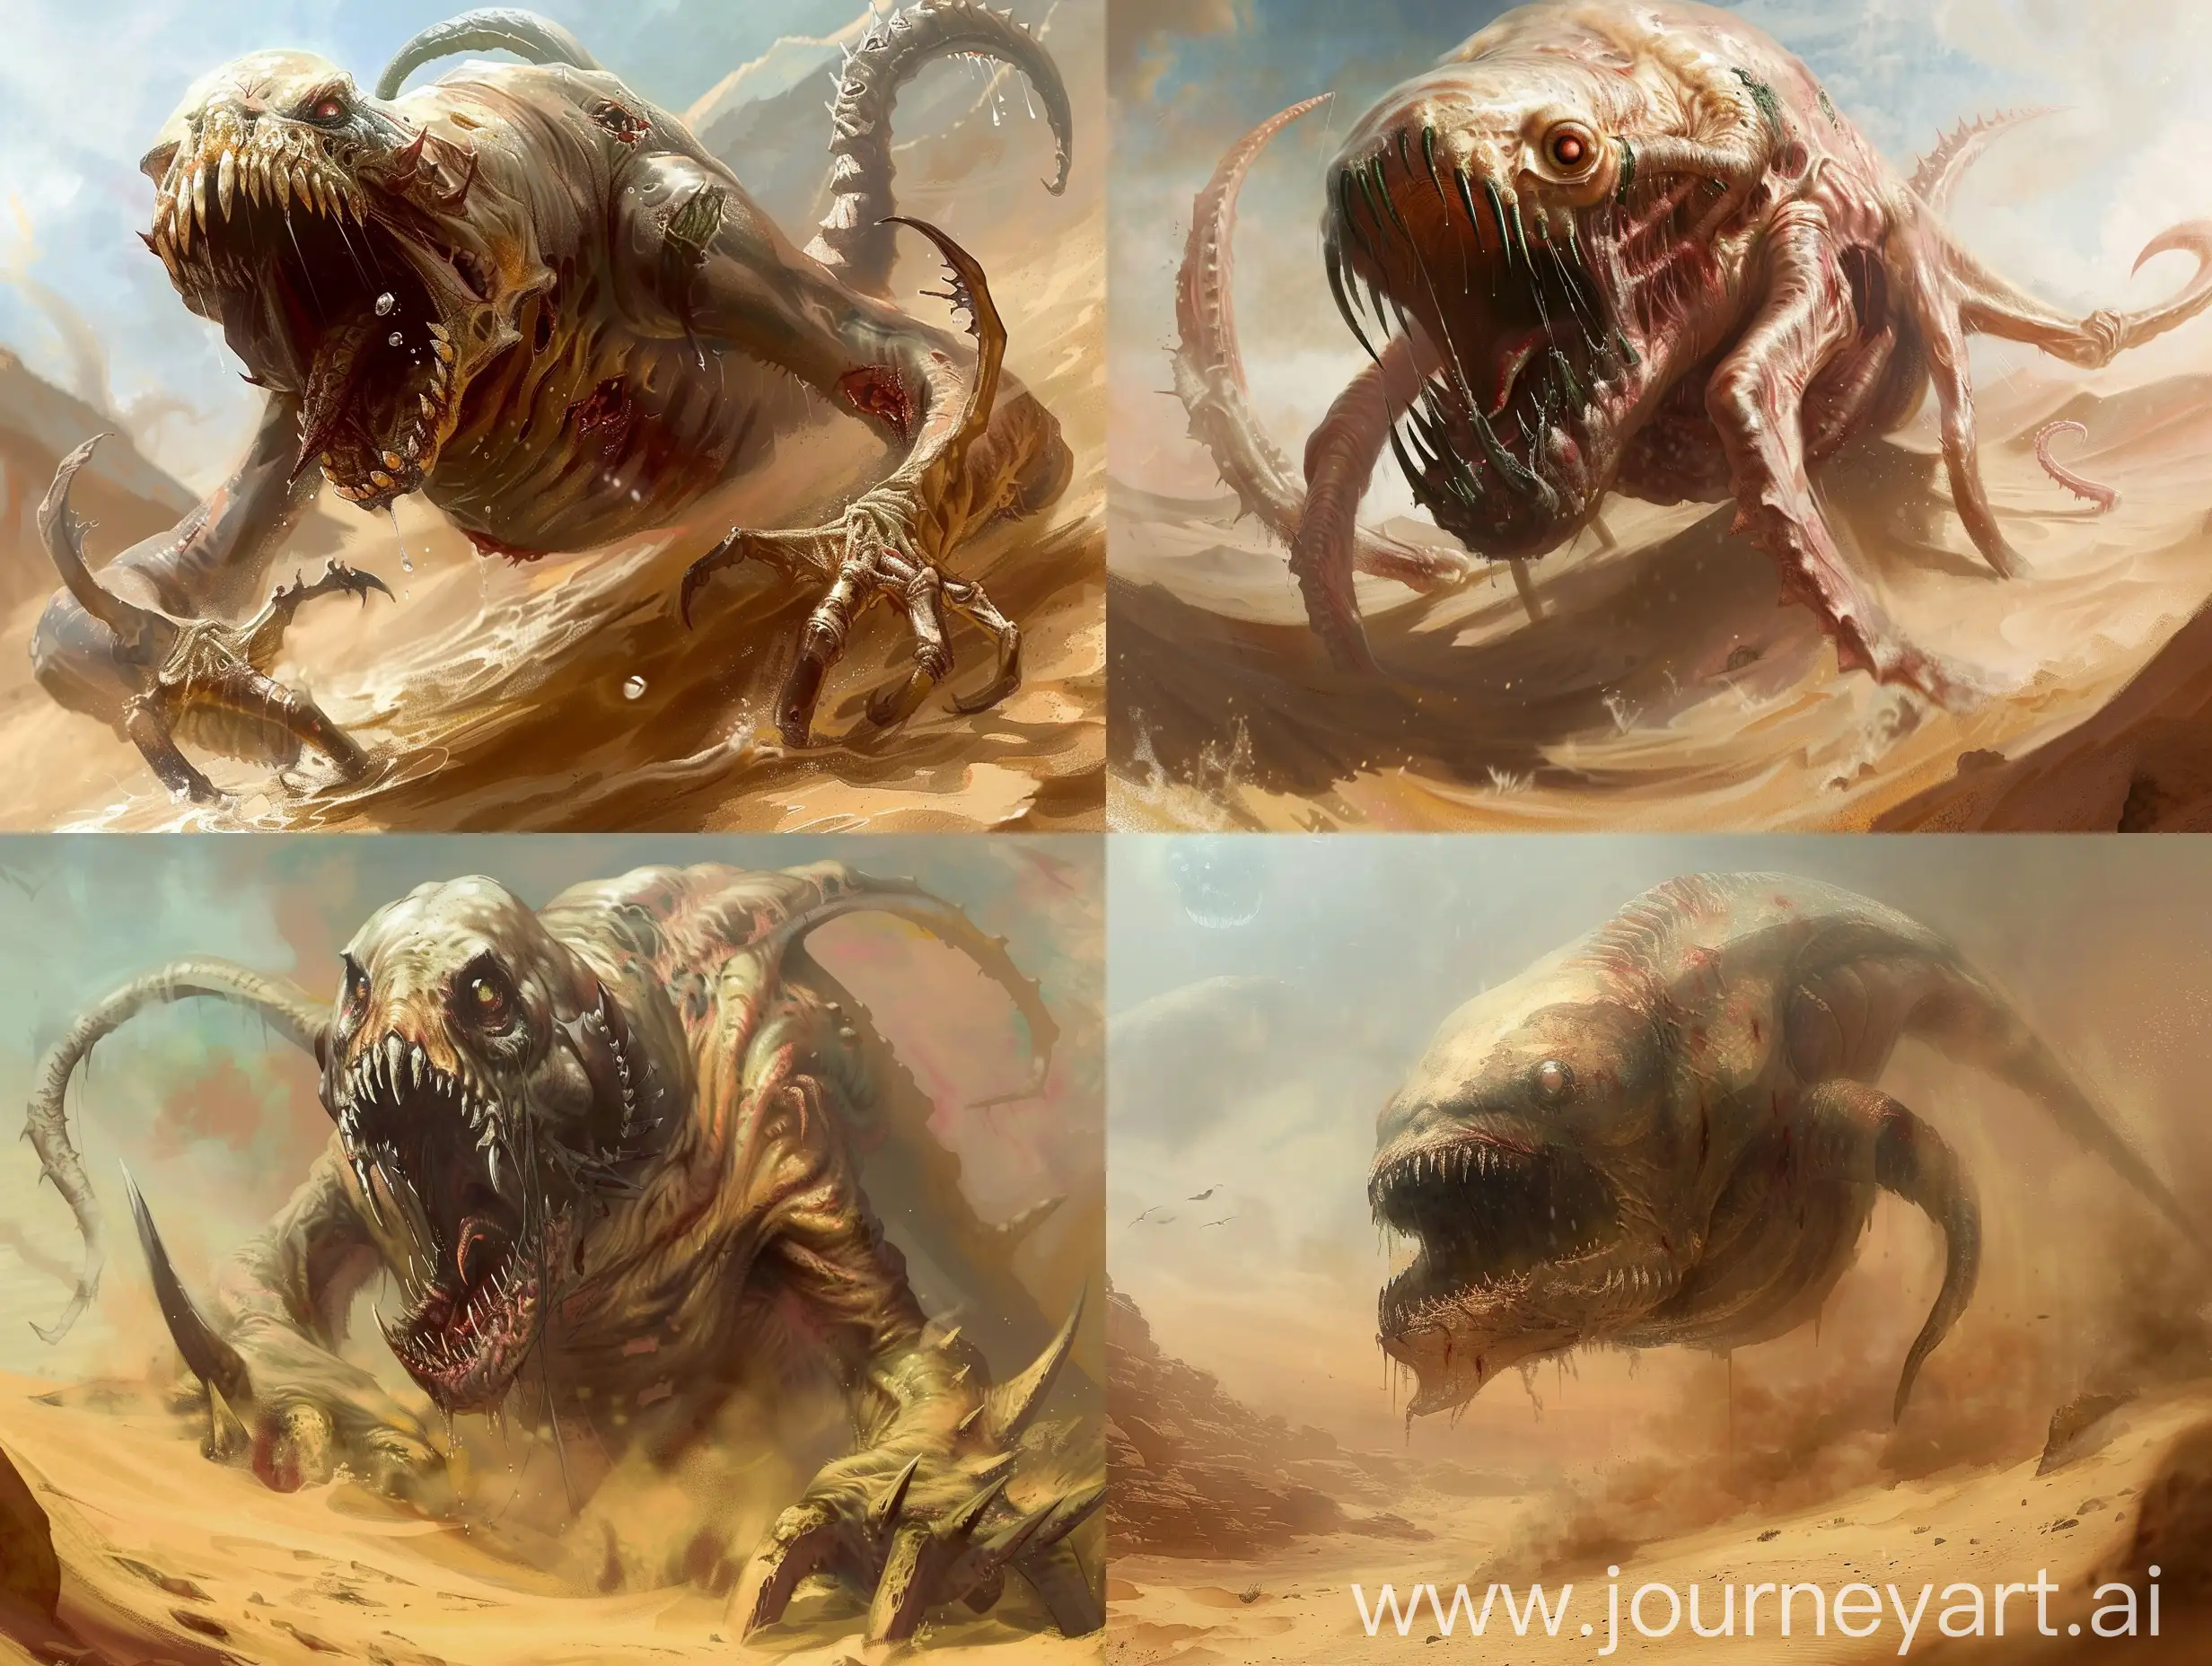 Menacing-Gargantuan-Zombie-Kraken-Swimming-in-Desert-Dungeons-and-Dragons-Art-Style